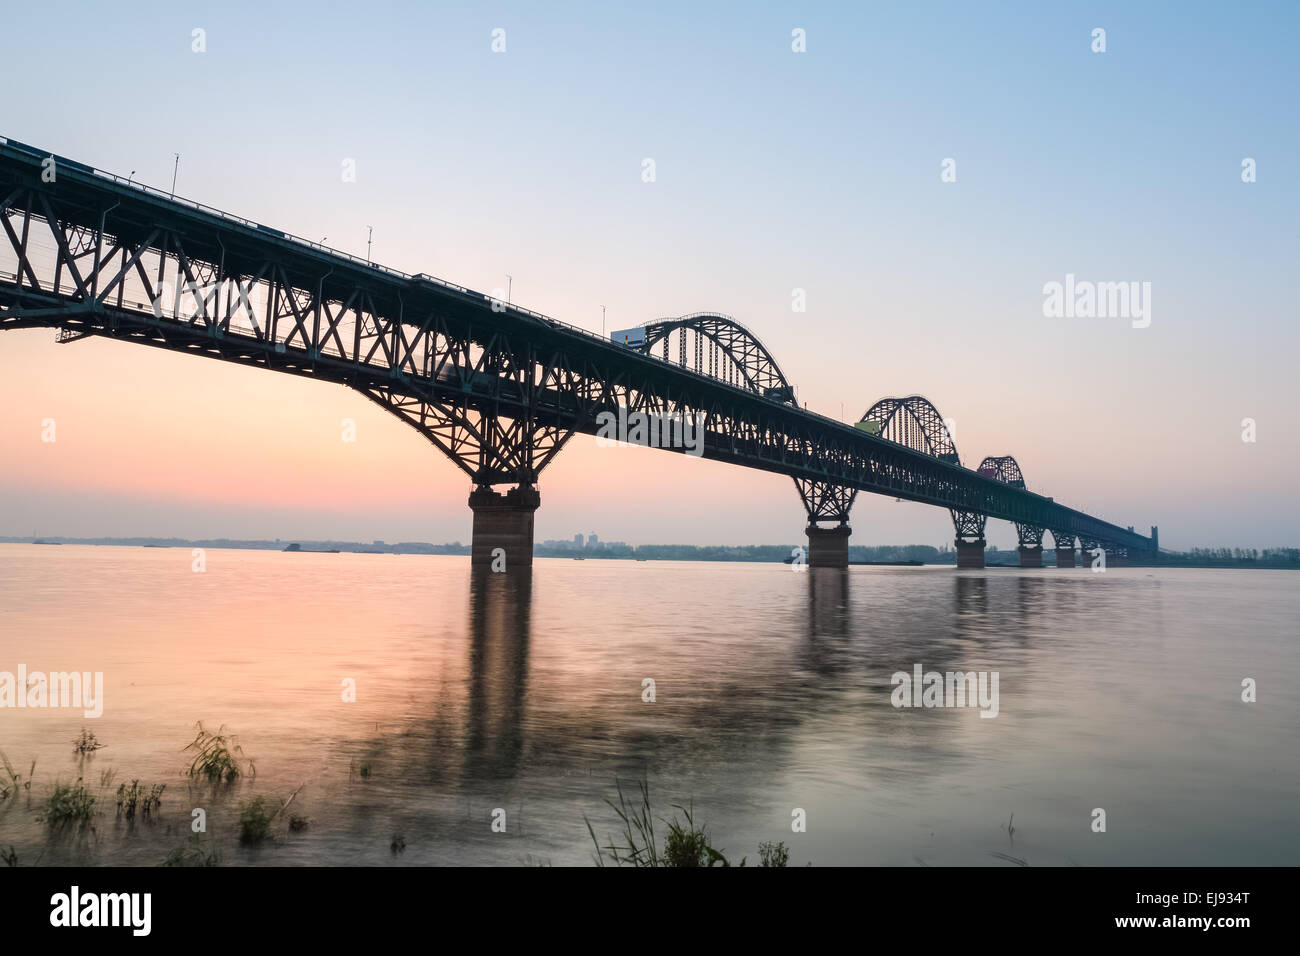 the jiujiang yangtze river bridge Stock Photo